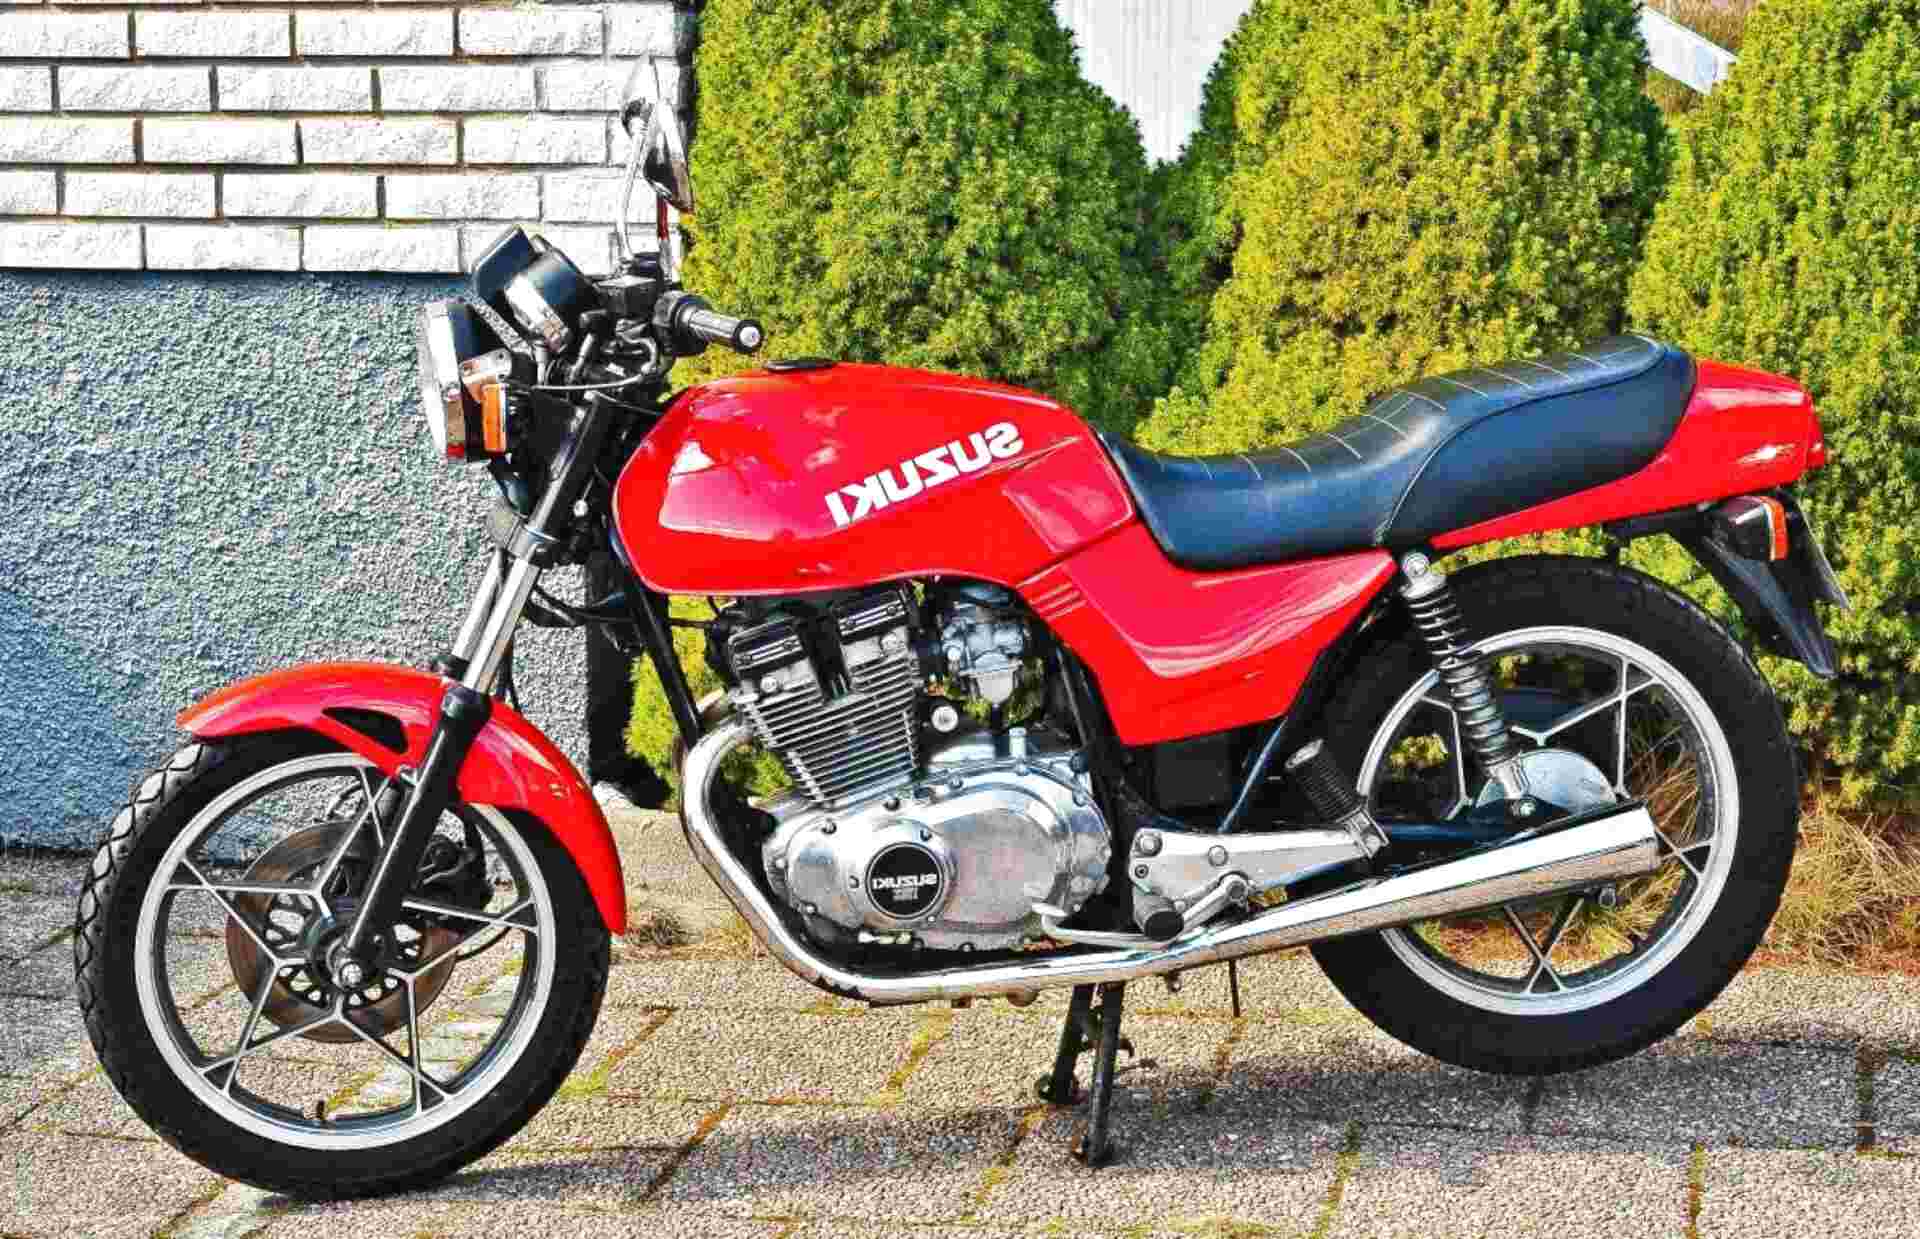 Suzuki Gsx 400 for sale in UK | 69 used Suzuki Gsx 400